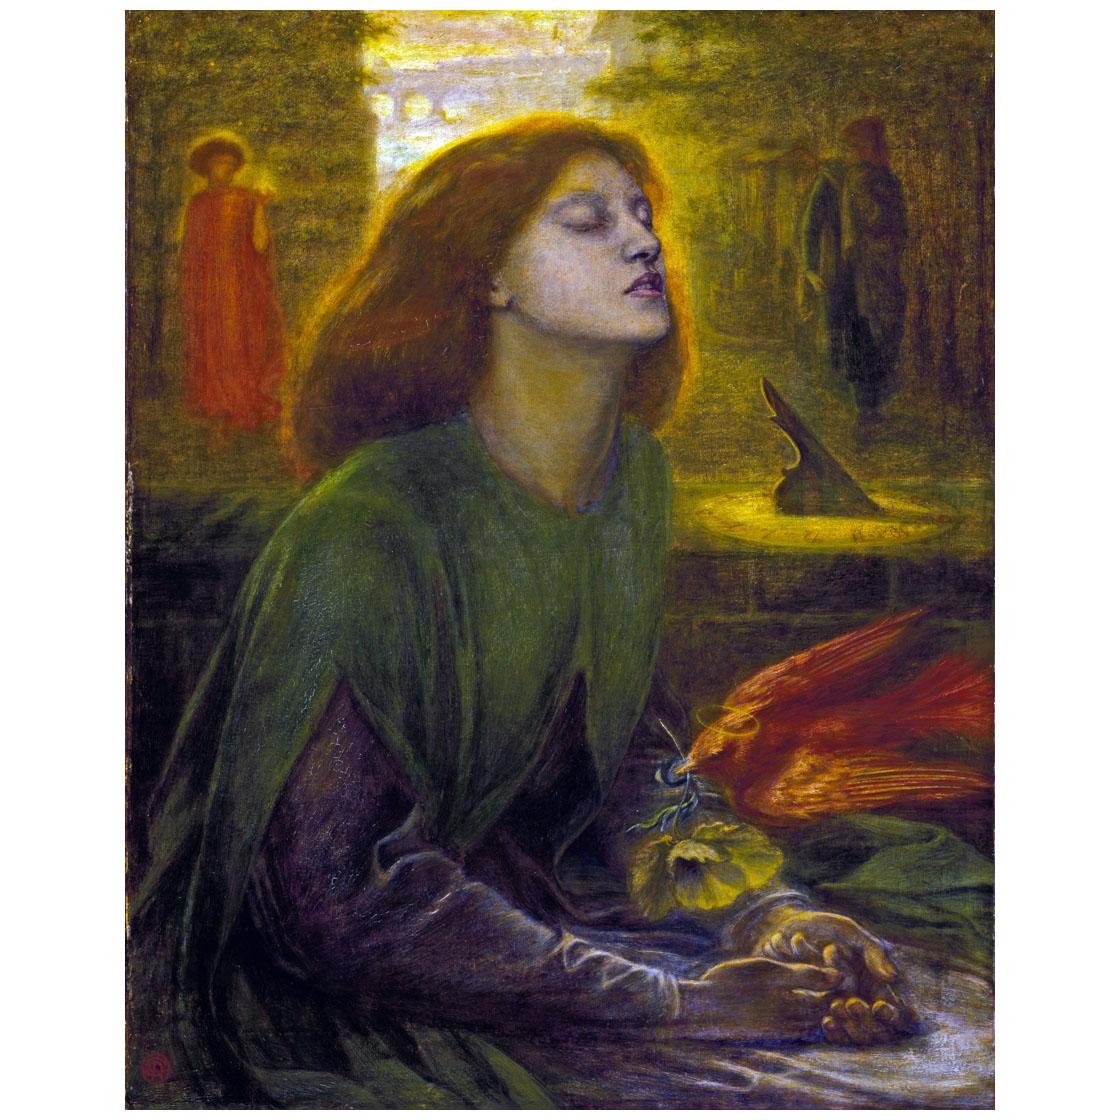 Dante Gabriel Rossetti. Beata Beatrix (Elizabeth Siddal). 1864. Tate Britain